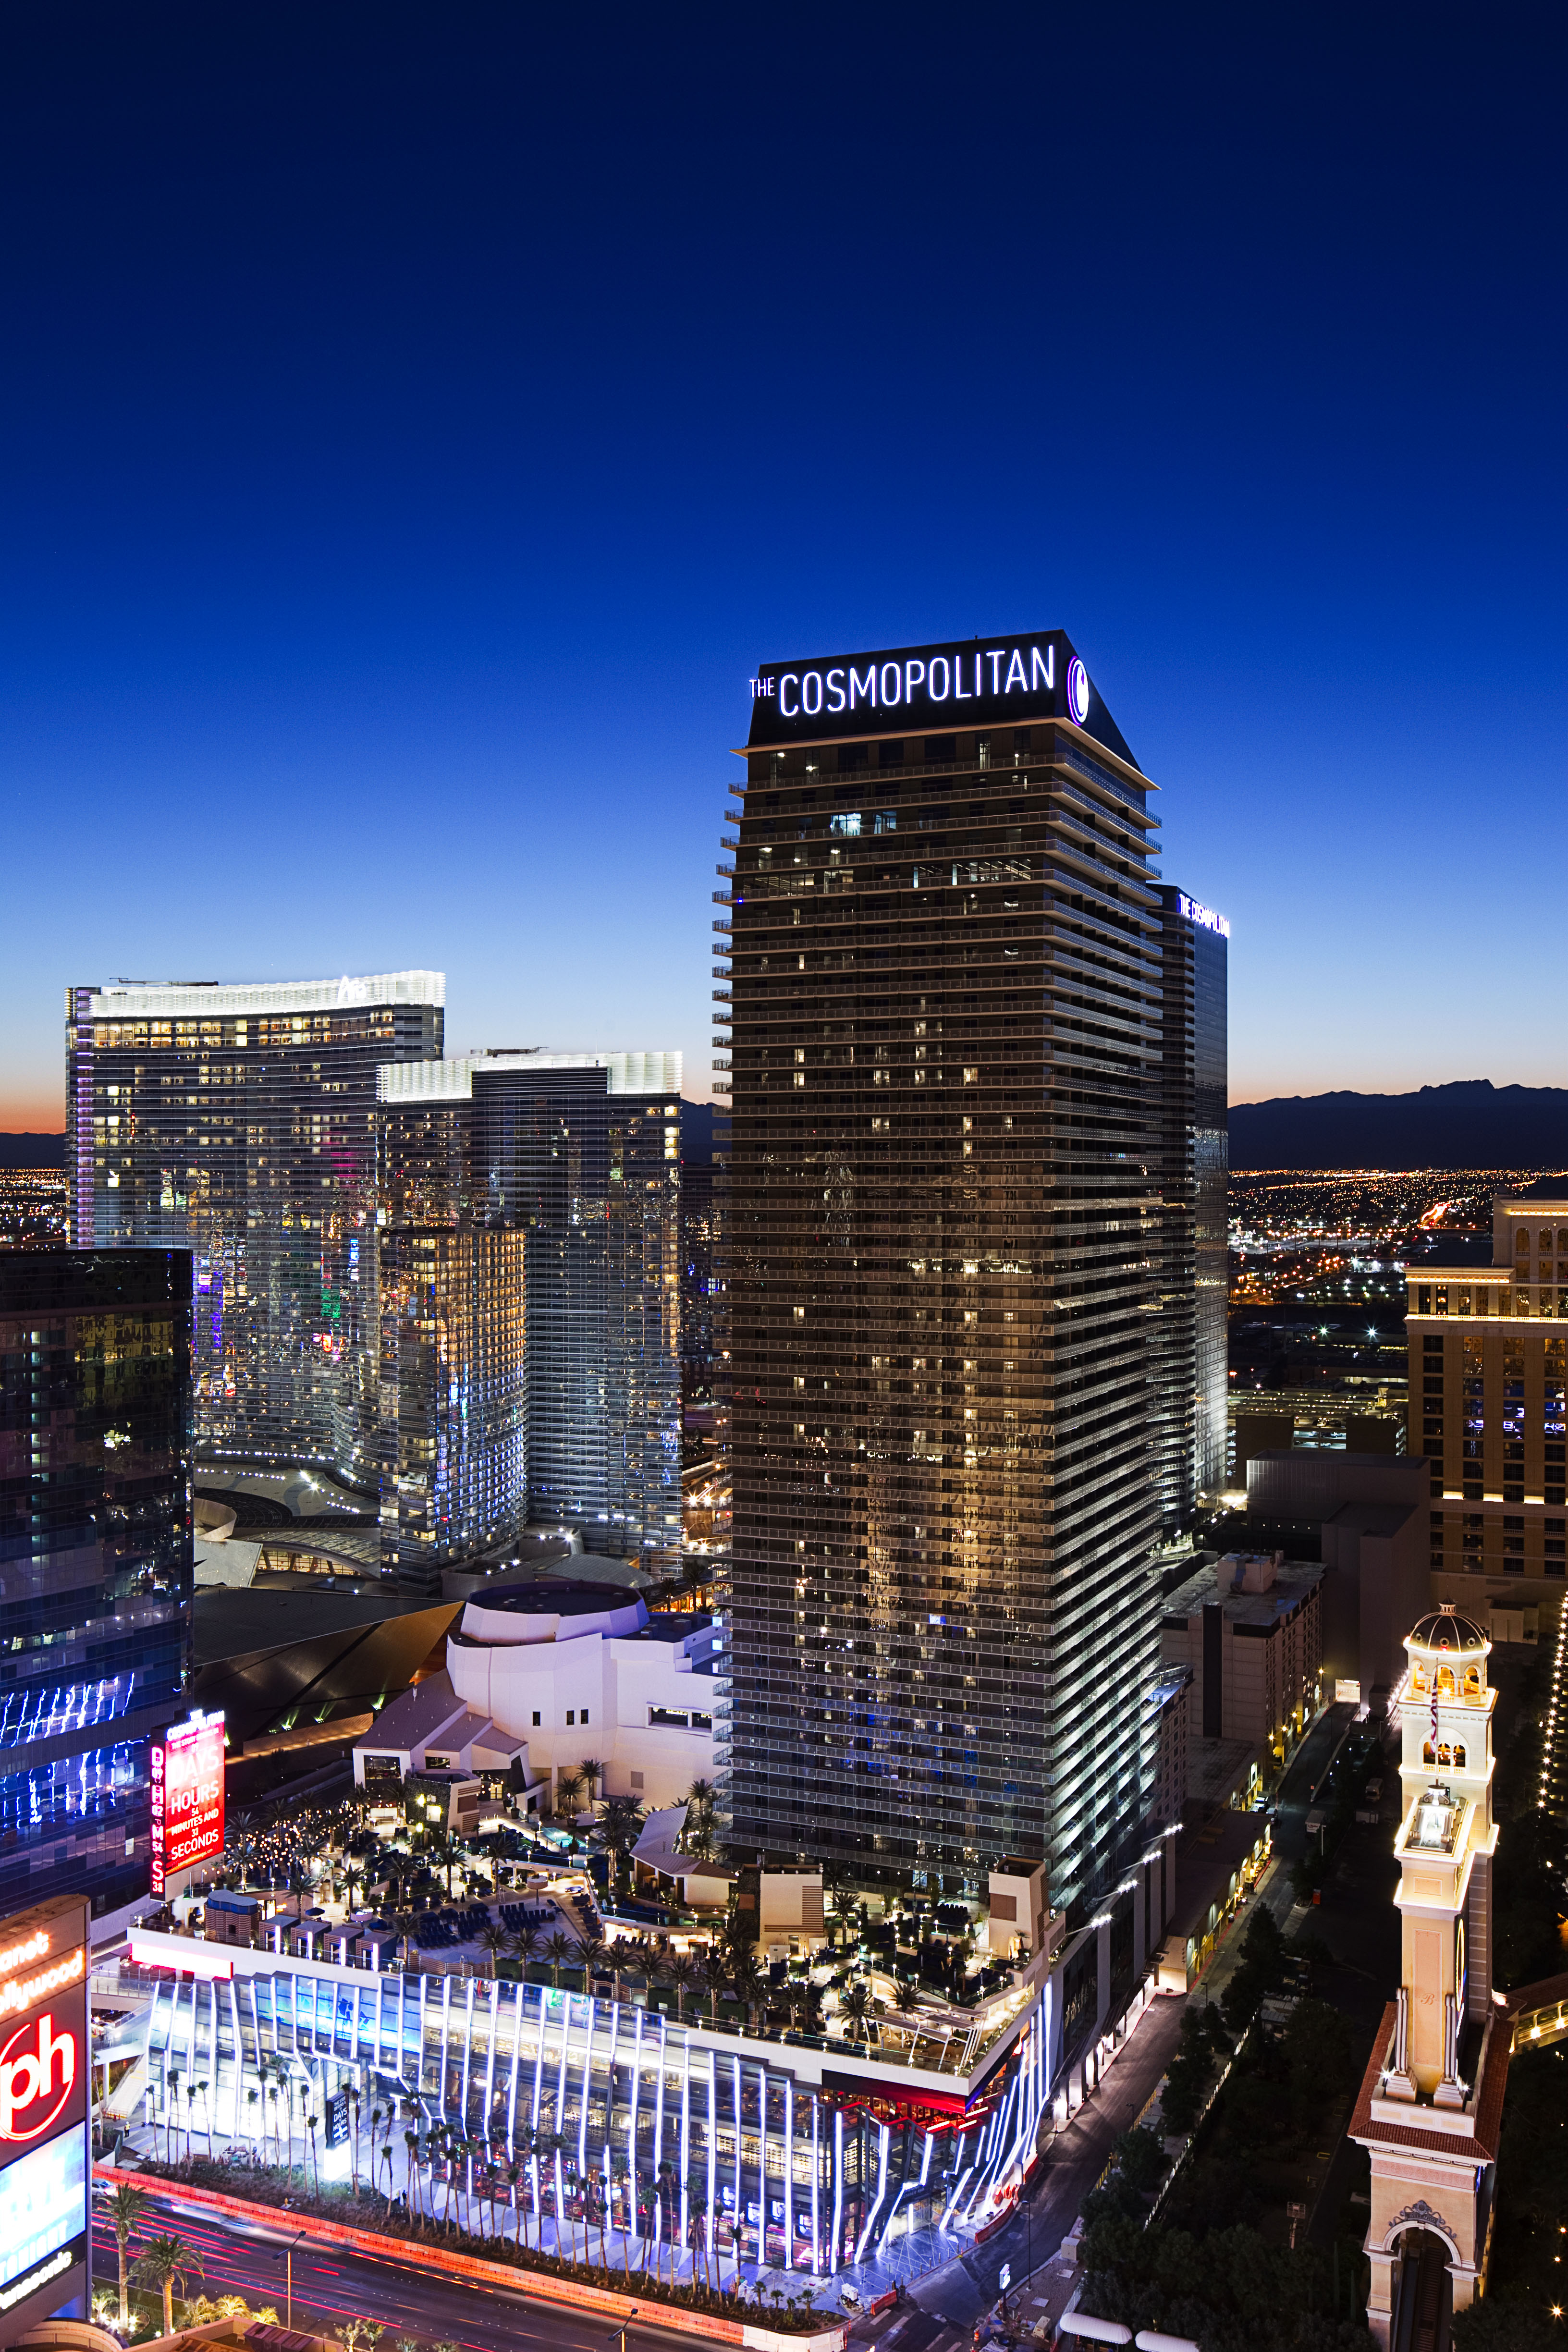 The Cosmopolitan Vegas